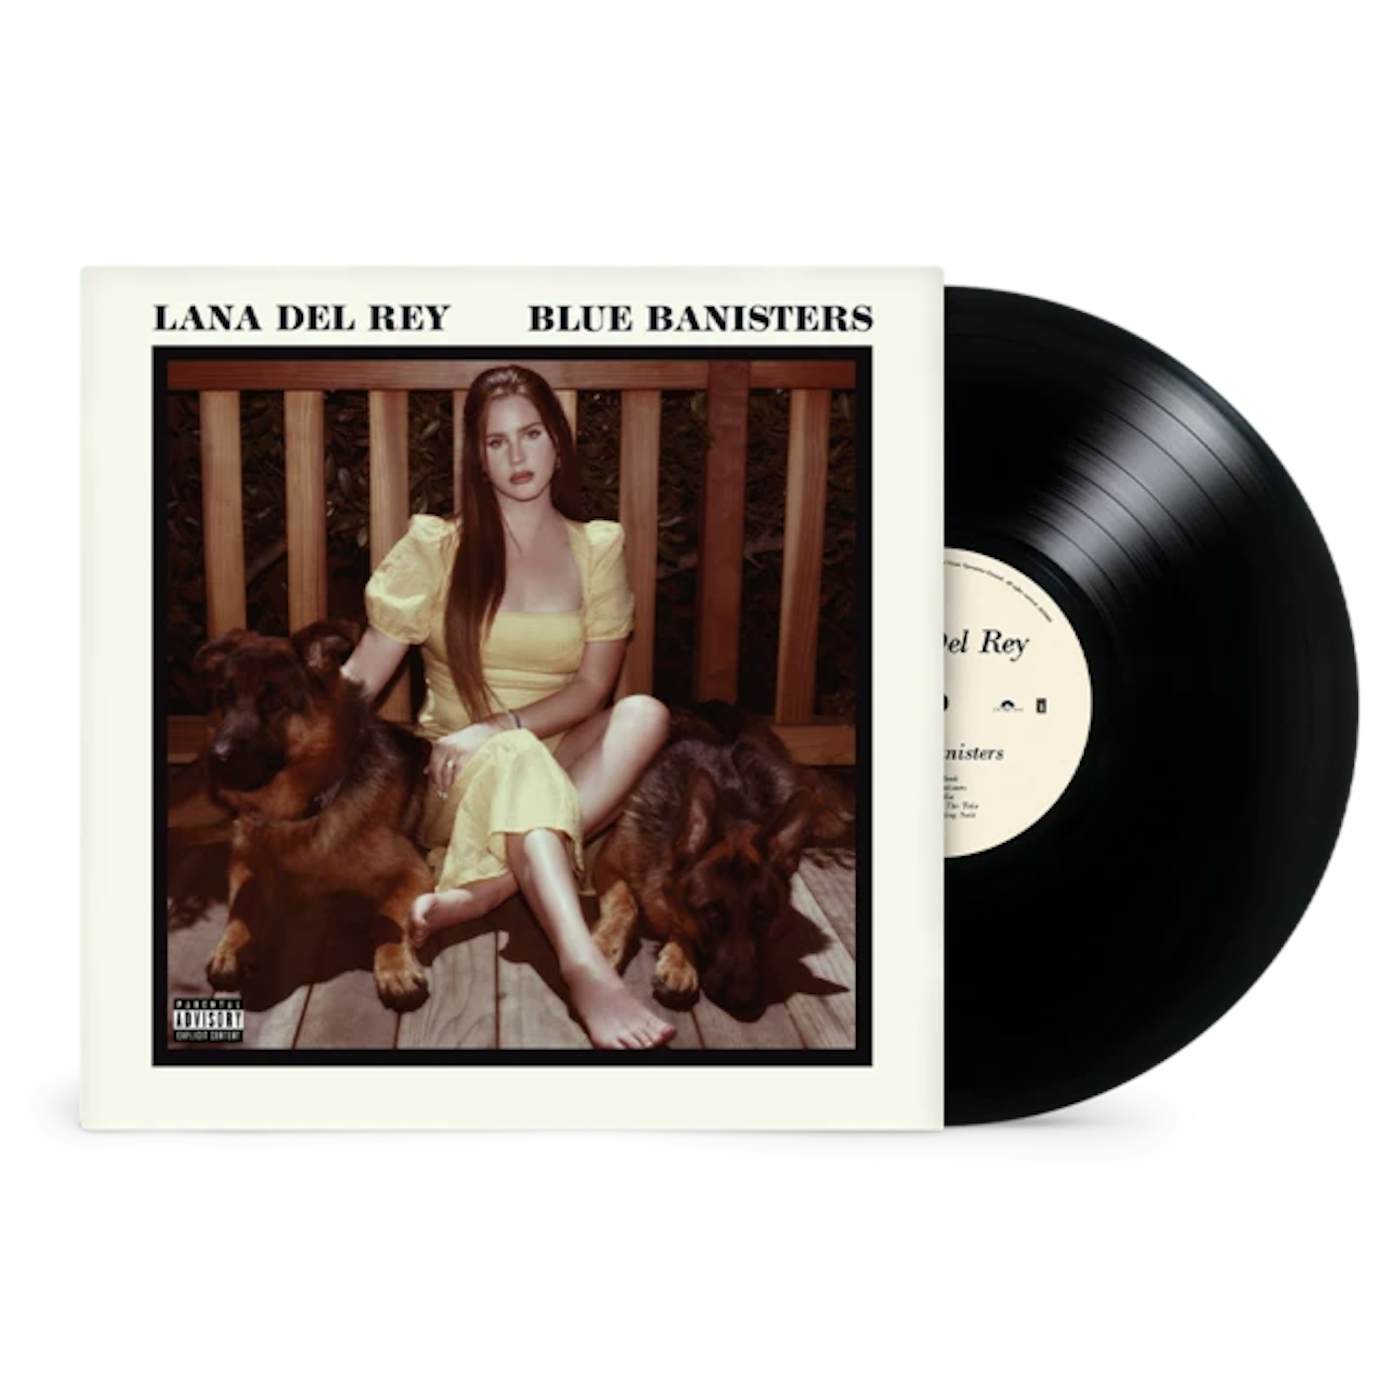 Lana Del Rey - Chemtrails Over The Country Club / LP ltd blue Vinyl RSD -  Sealed - Album LP, Edizione limitata - Lancio al Record Store Day, Prima  stampa, Vinile colorato, Copertina alternativa - 2021/2021 - Catawiki